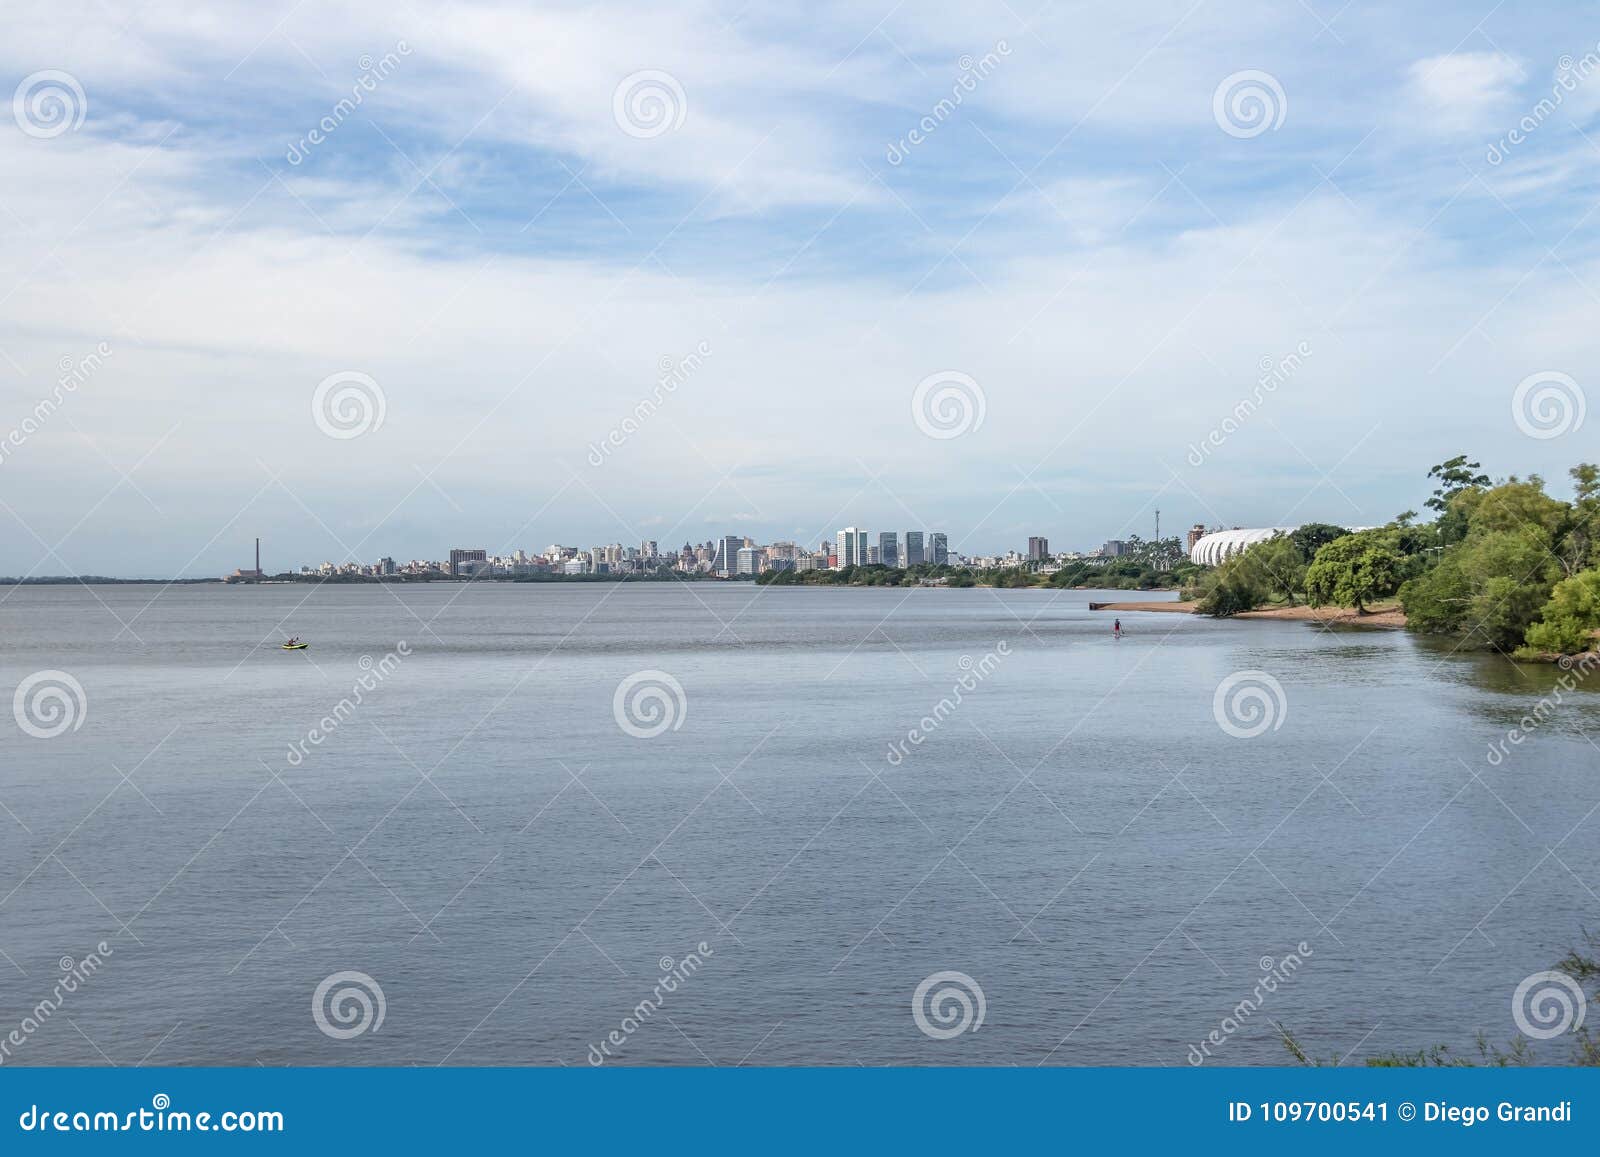 porto alegre skyline and guaiba river - porto alegre, rio grande do sul, brazil